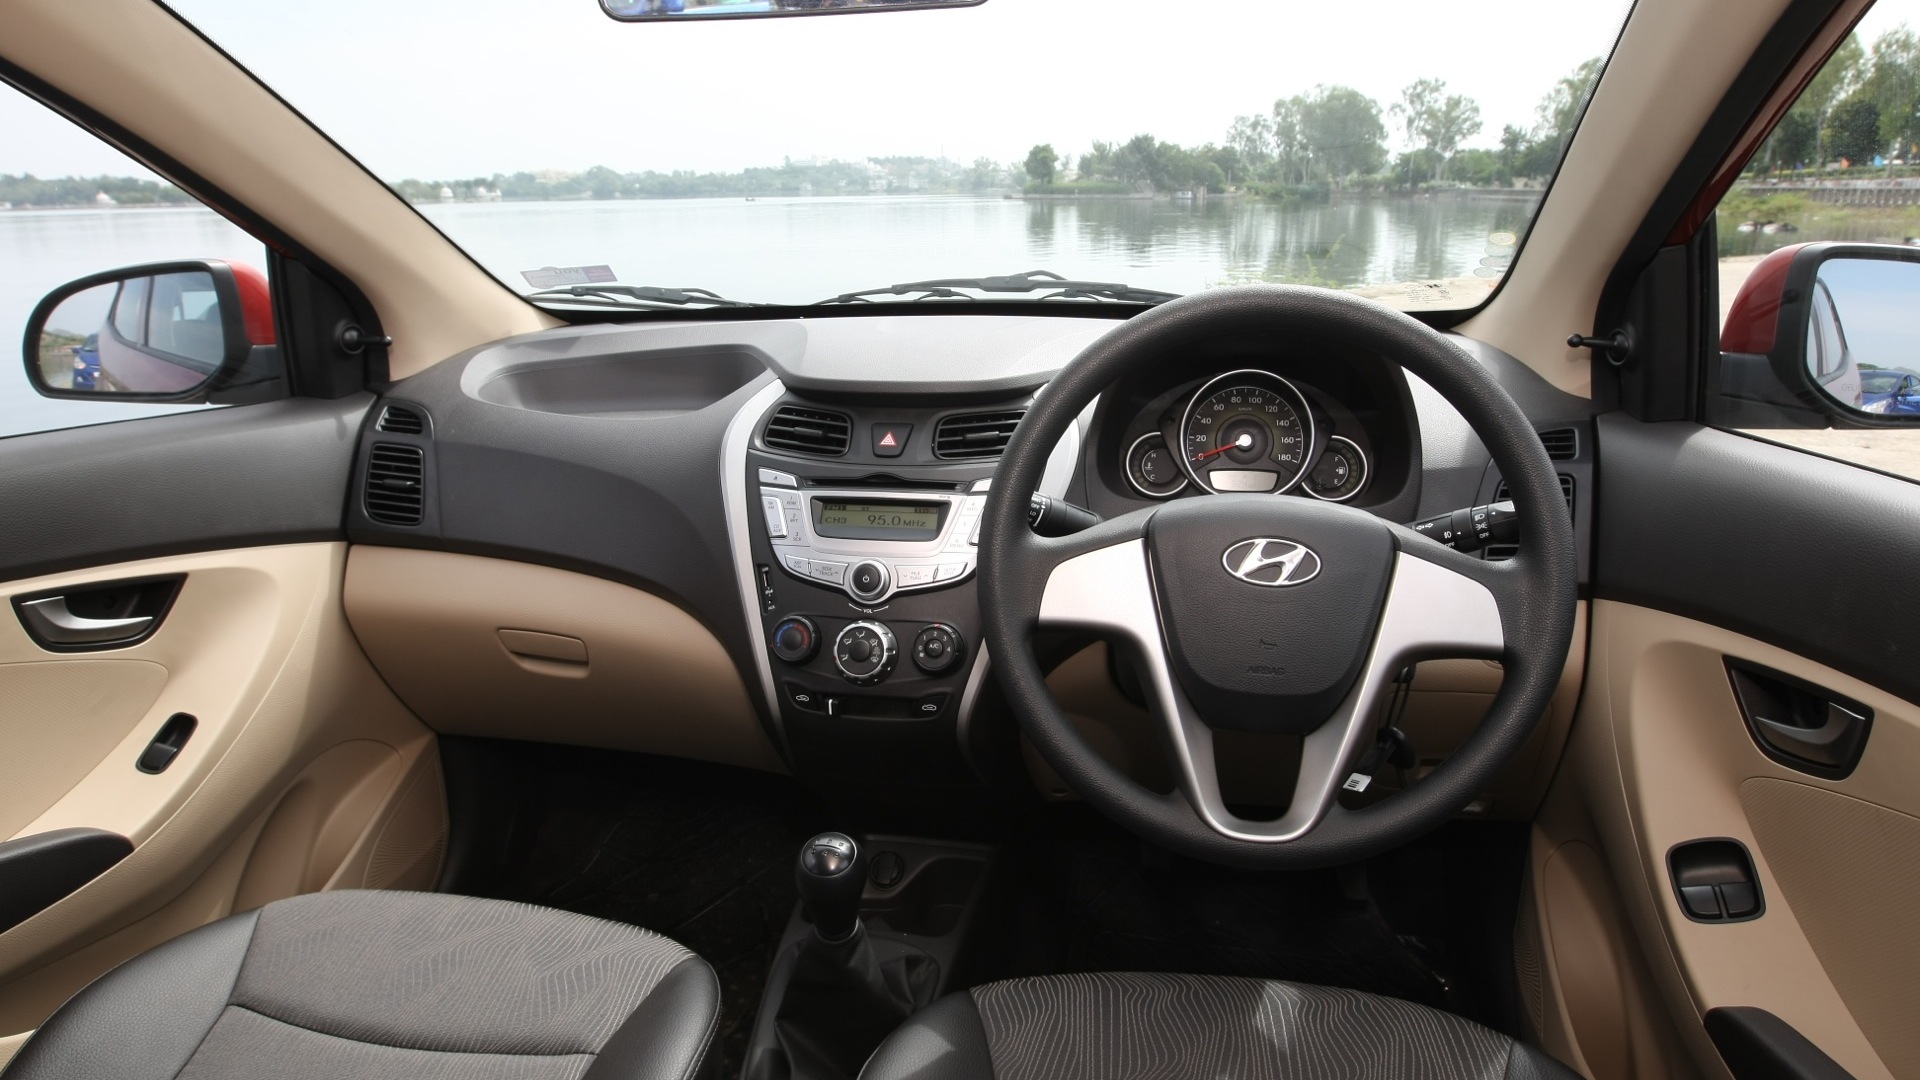 Hyundai Eon 2013 Sportz Interior Car Photos Overdrive